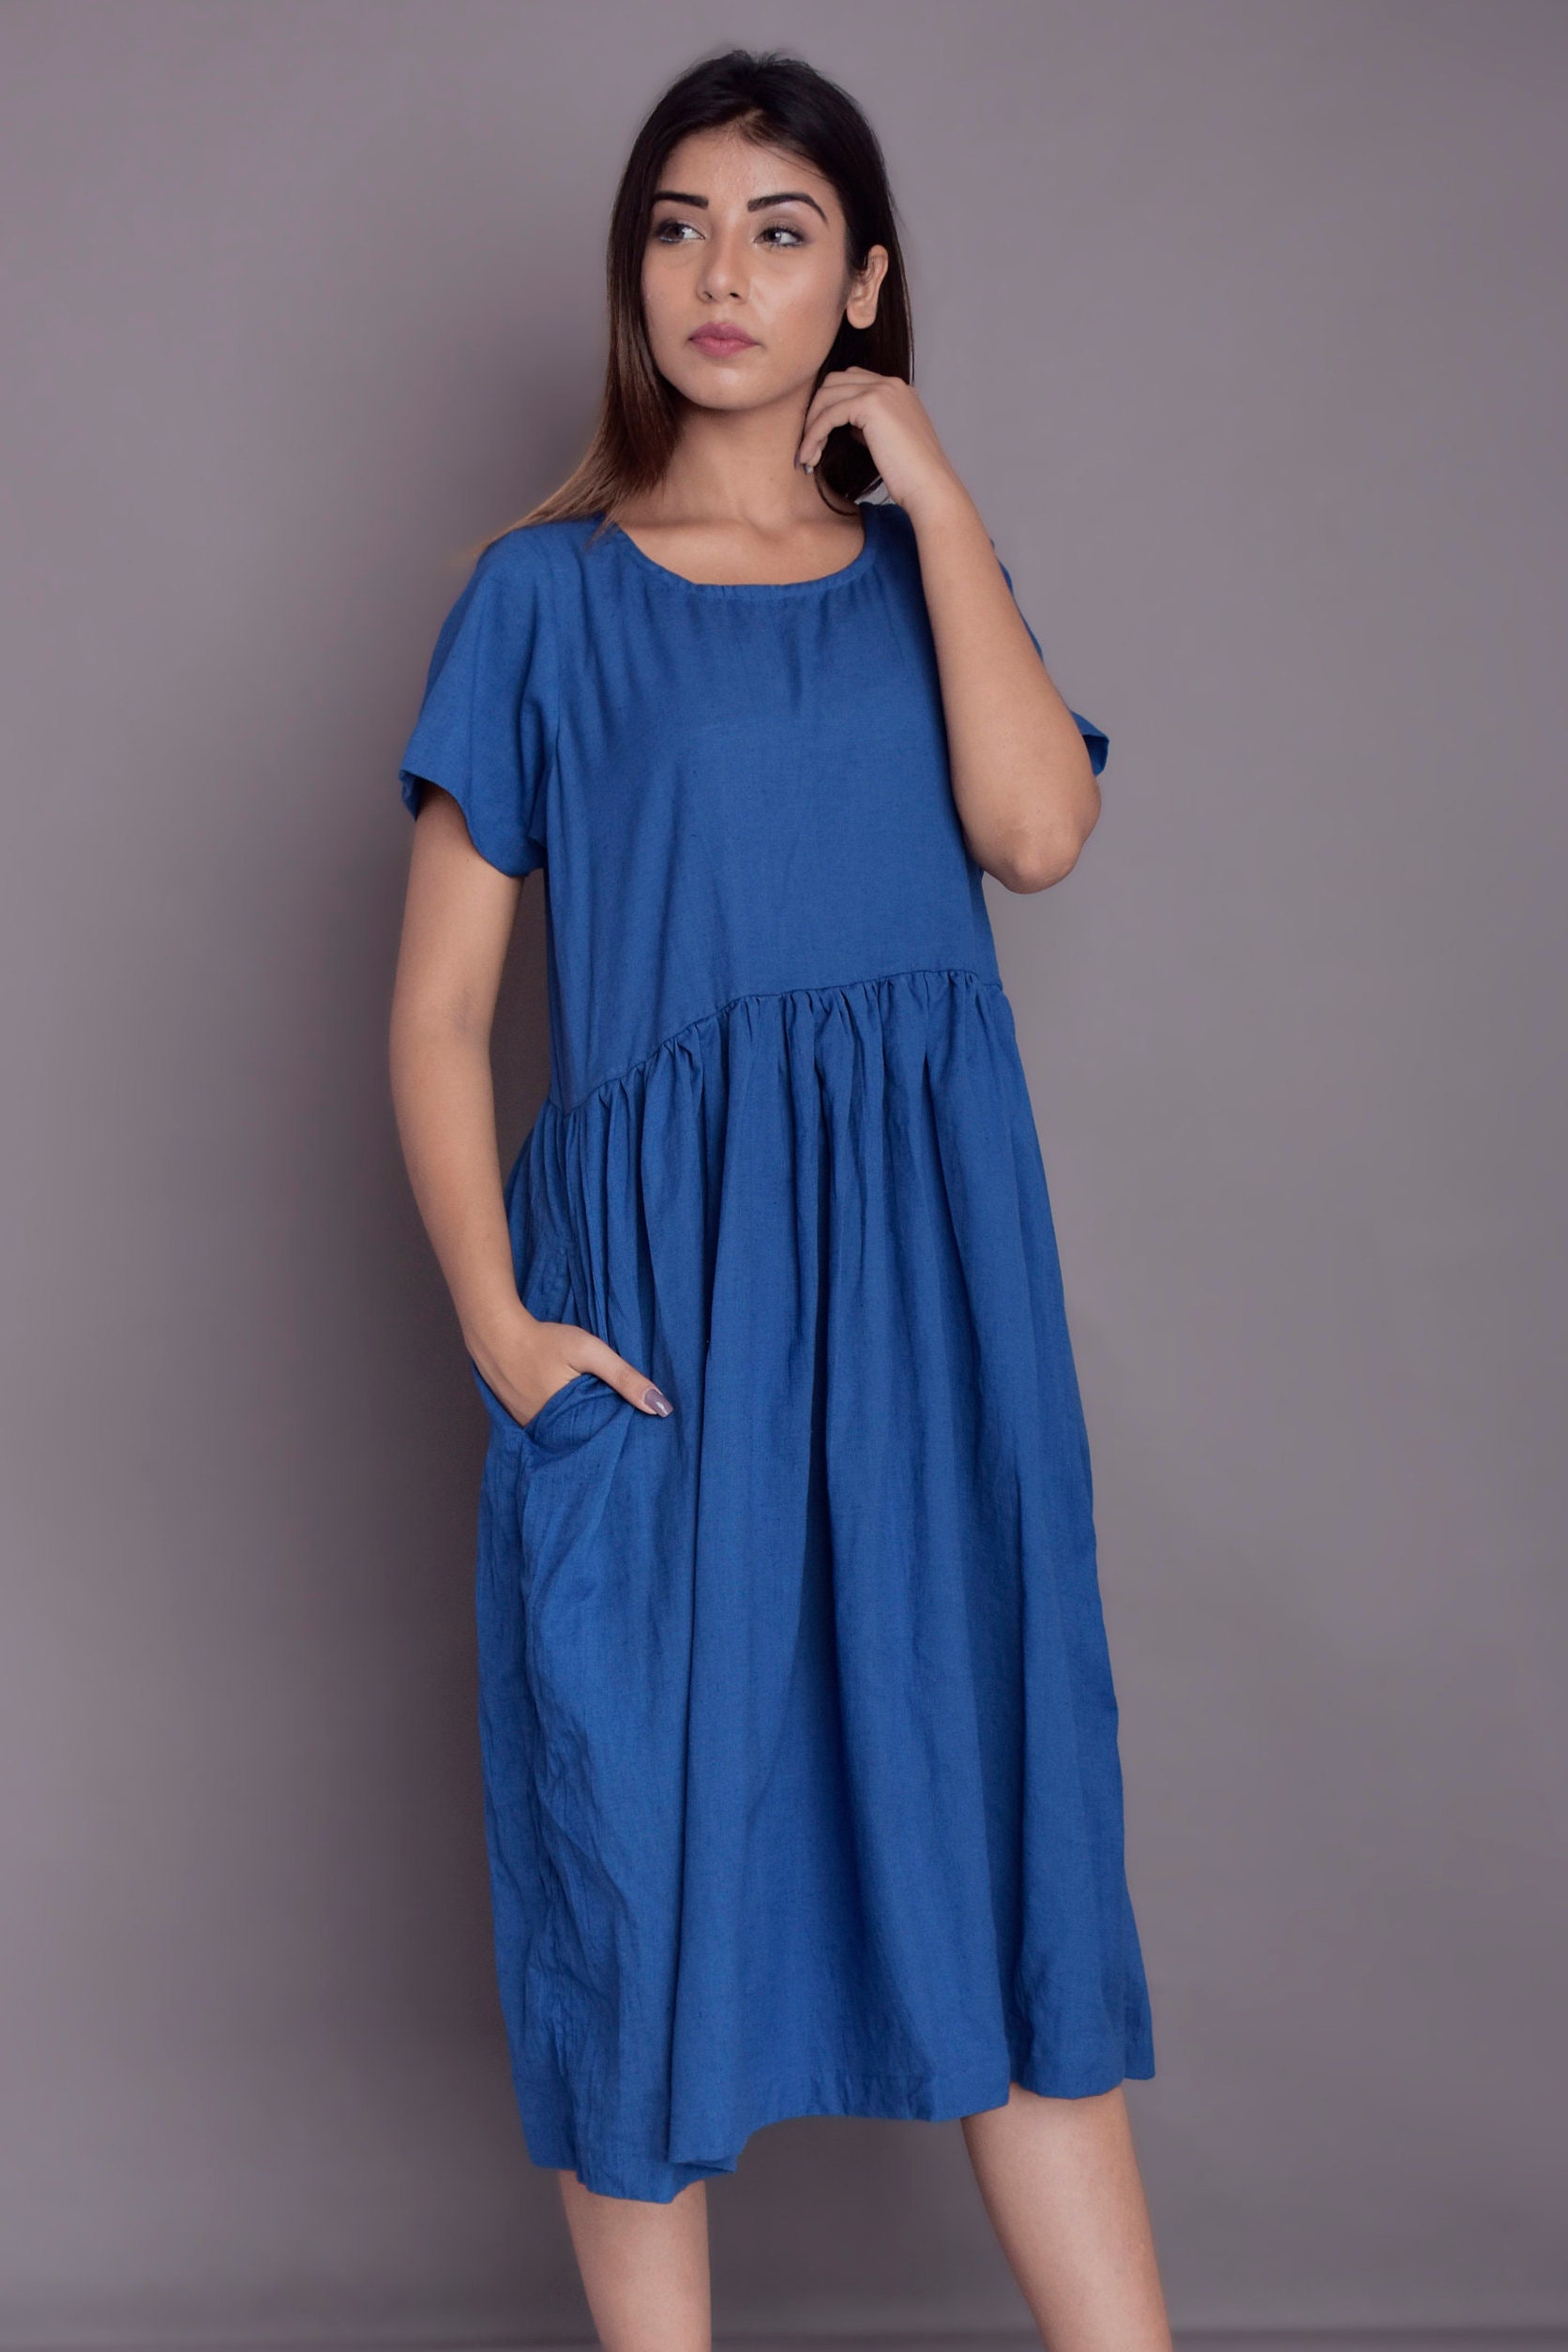 Linen Midi Dress Short Sleeved Dress Blue Linen Dress | Etsy